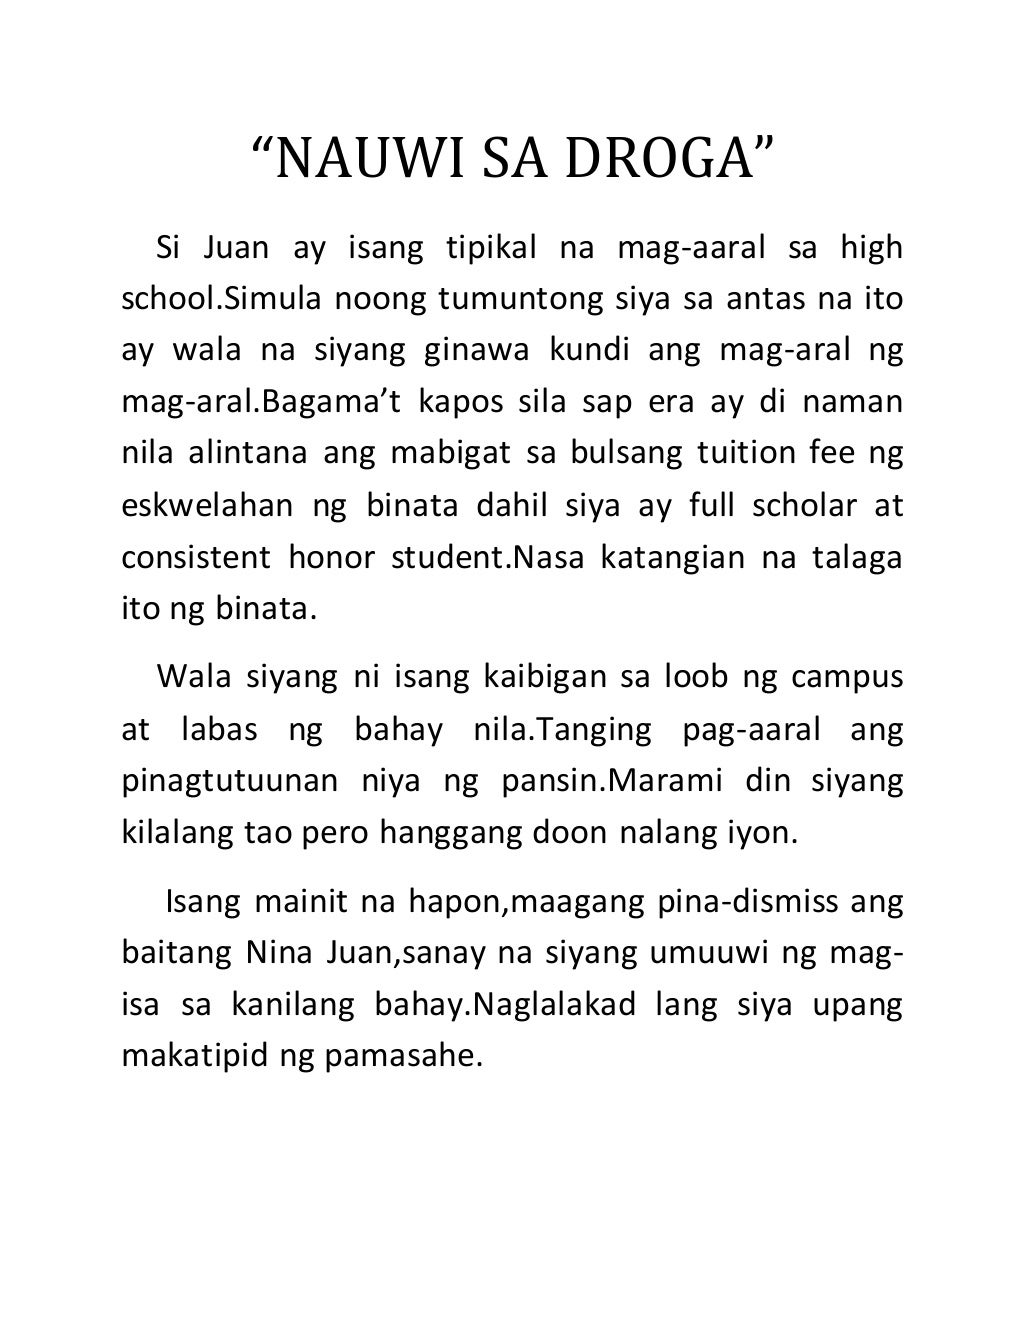 drugs essay tagalog